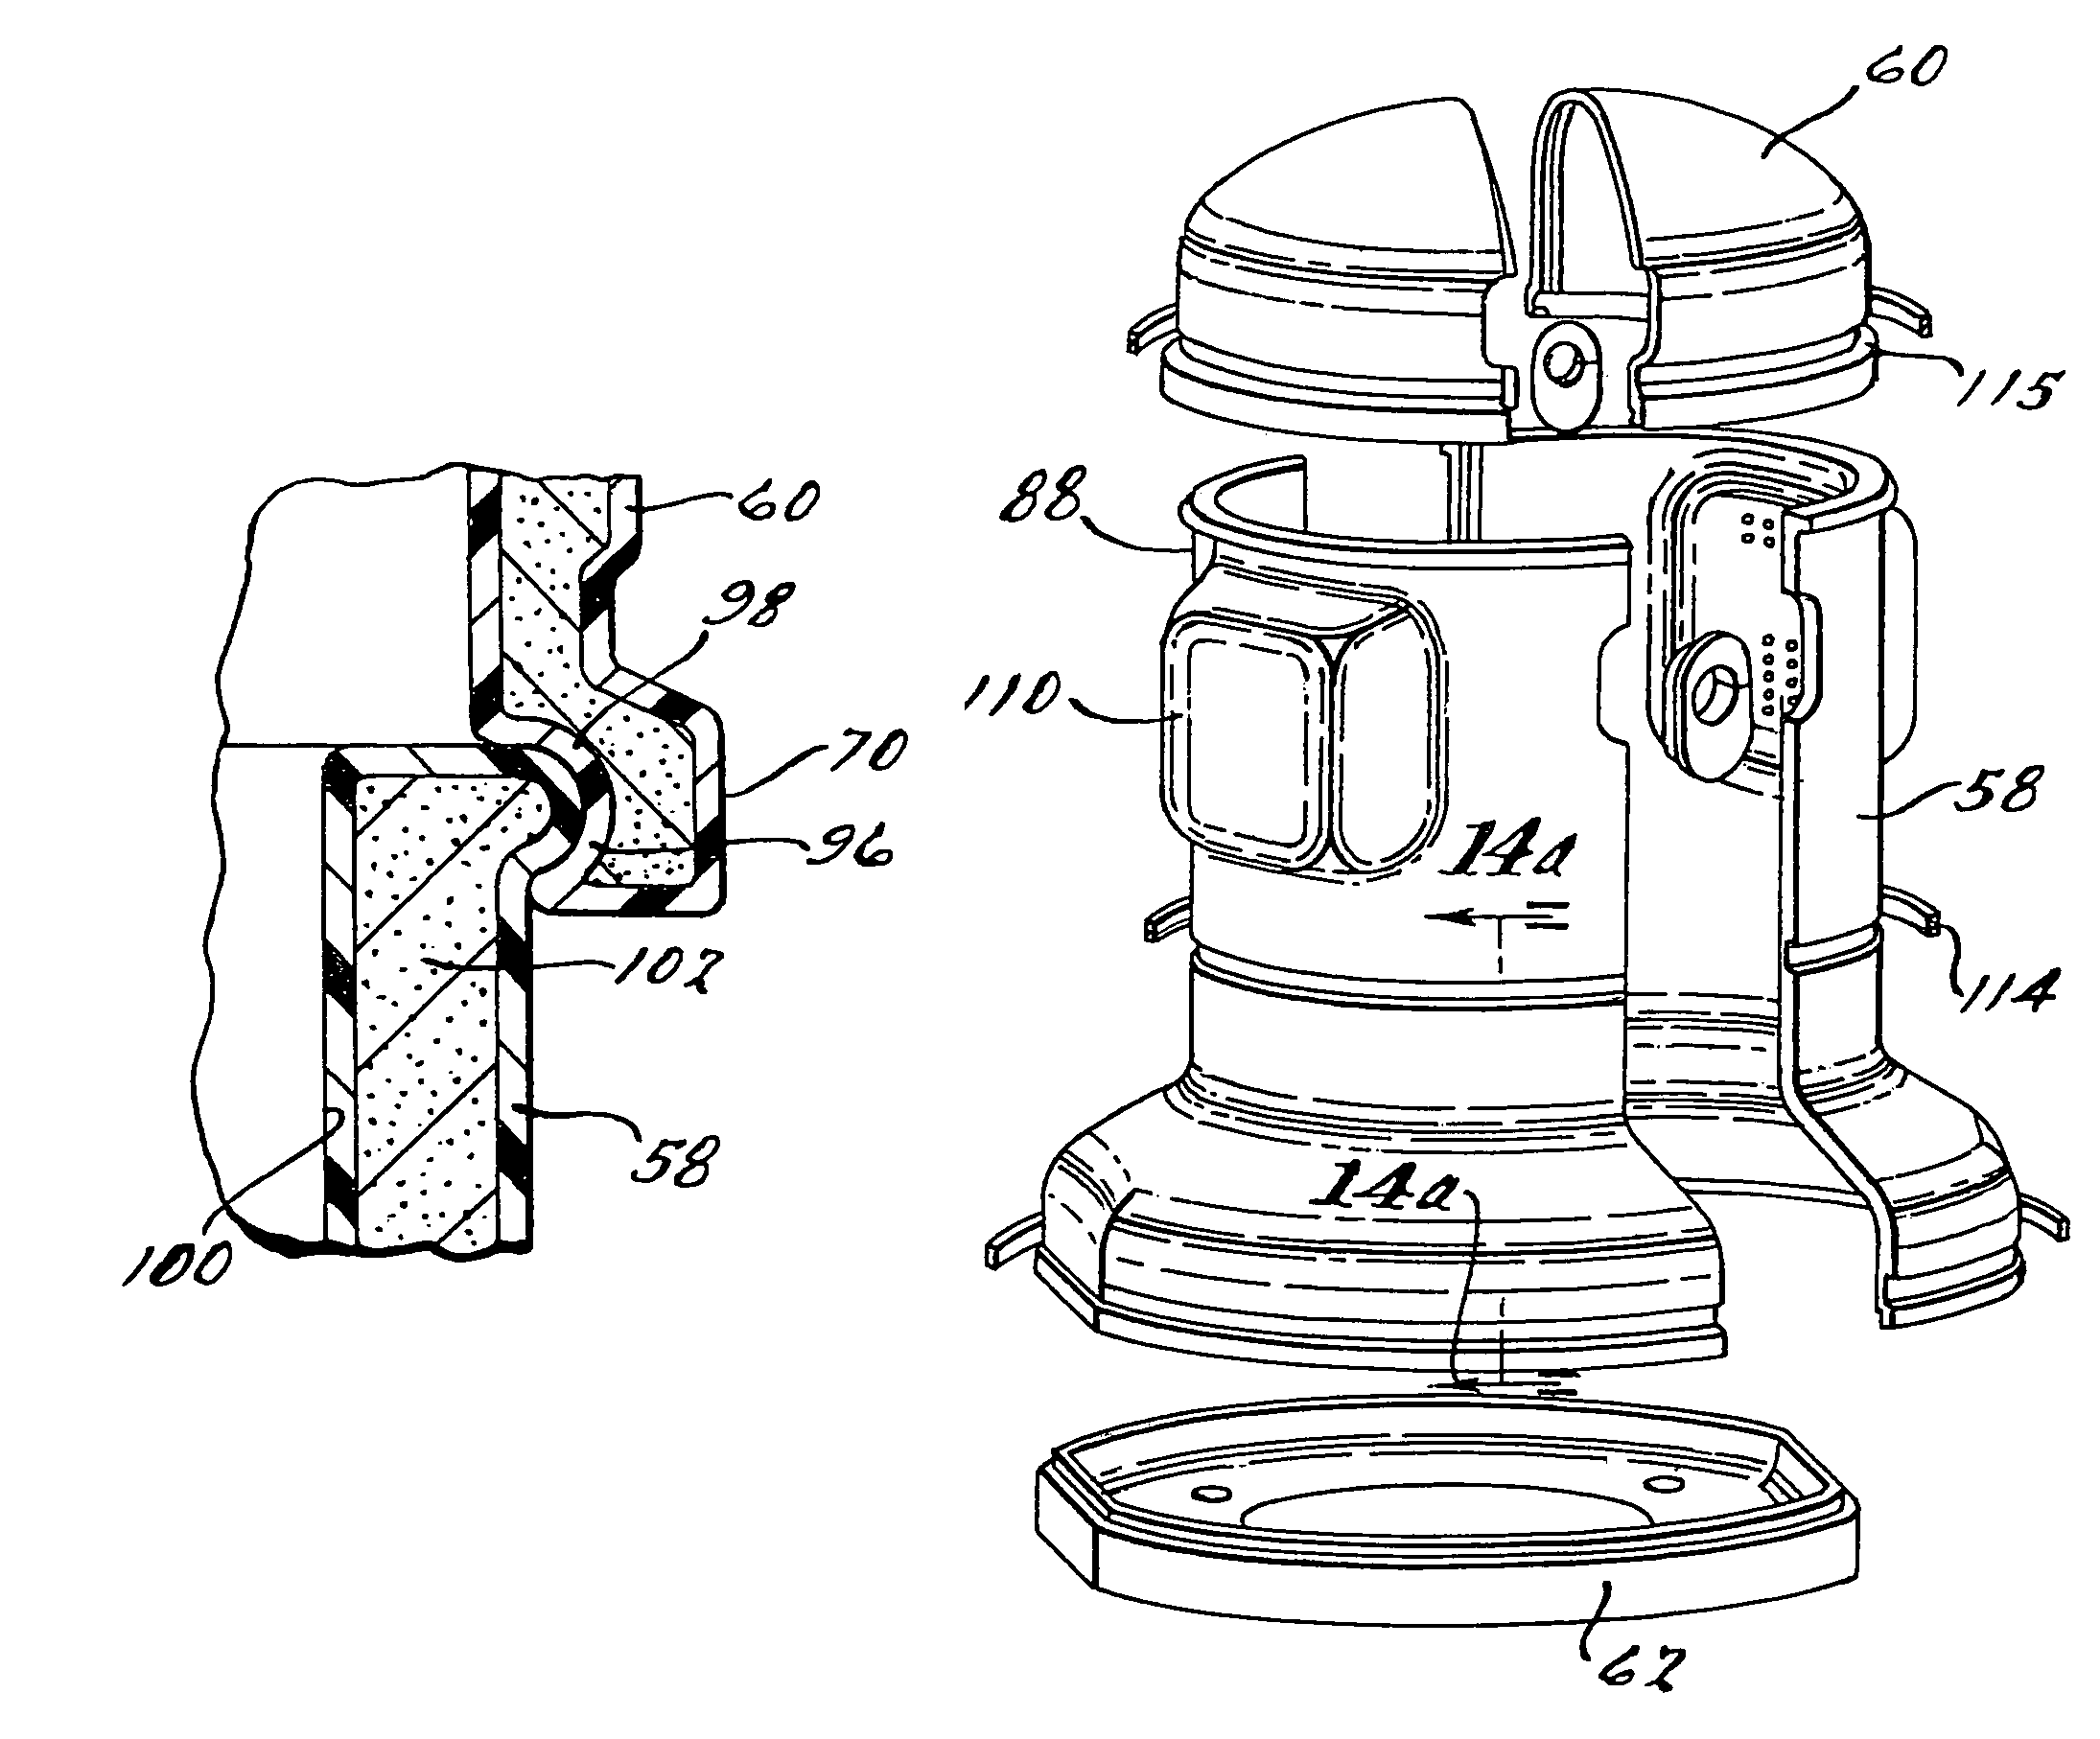 Compressor sound attenuation enclosure